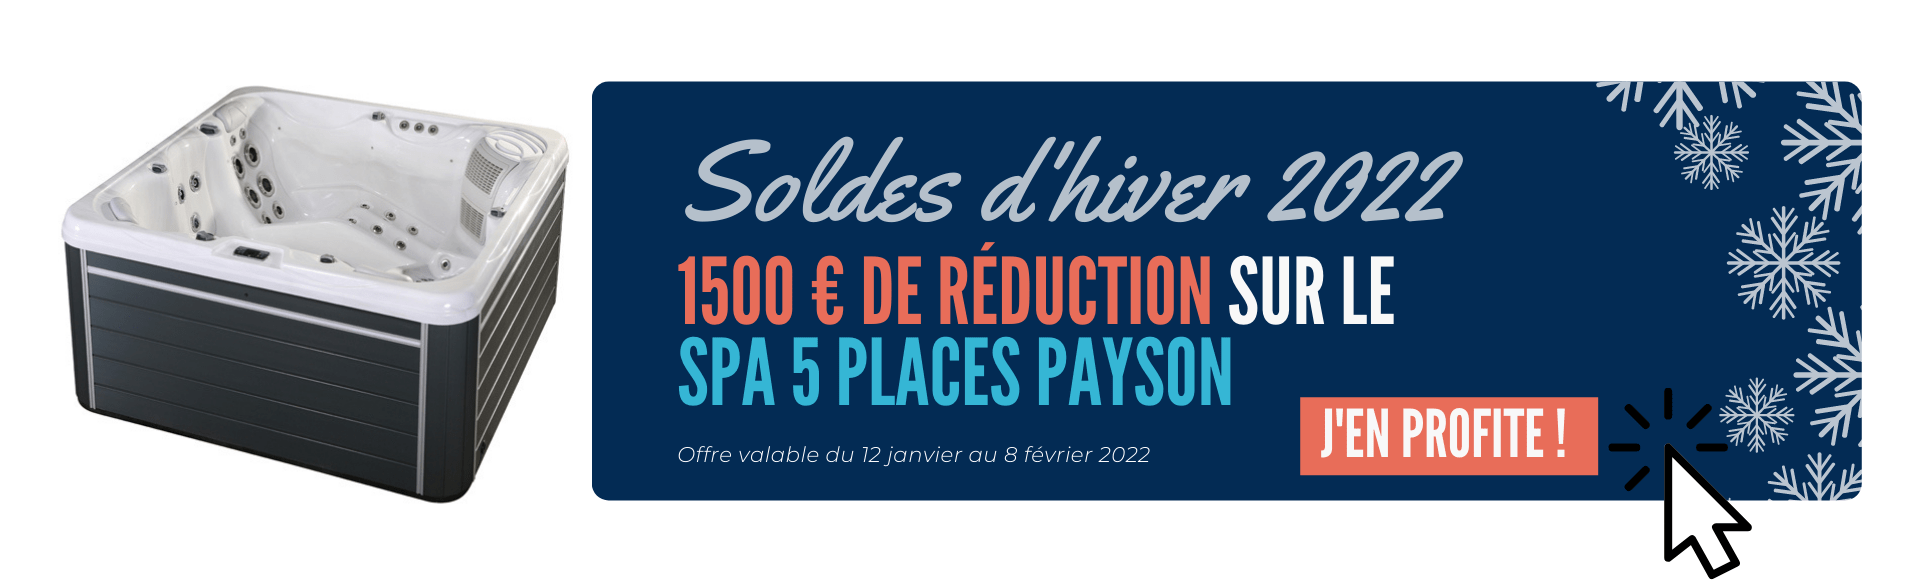 Soldes d'hiver 2022 - Promo spa Payson - 1500€